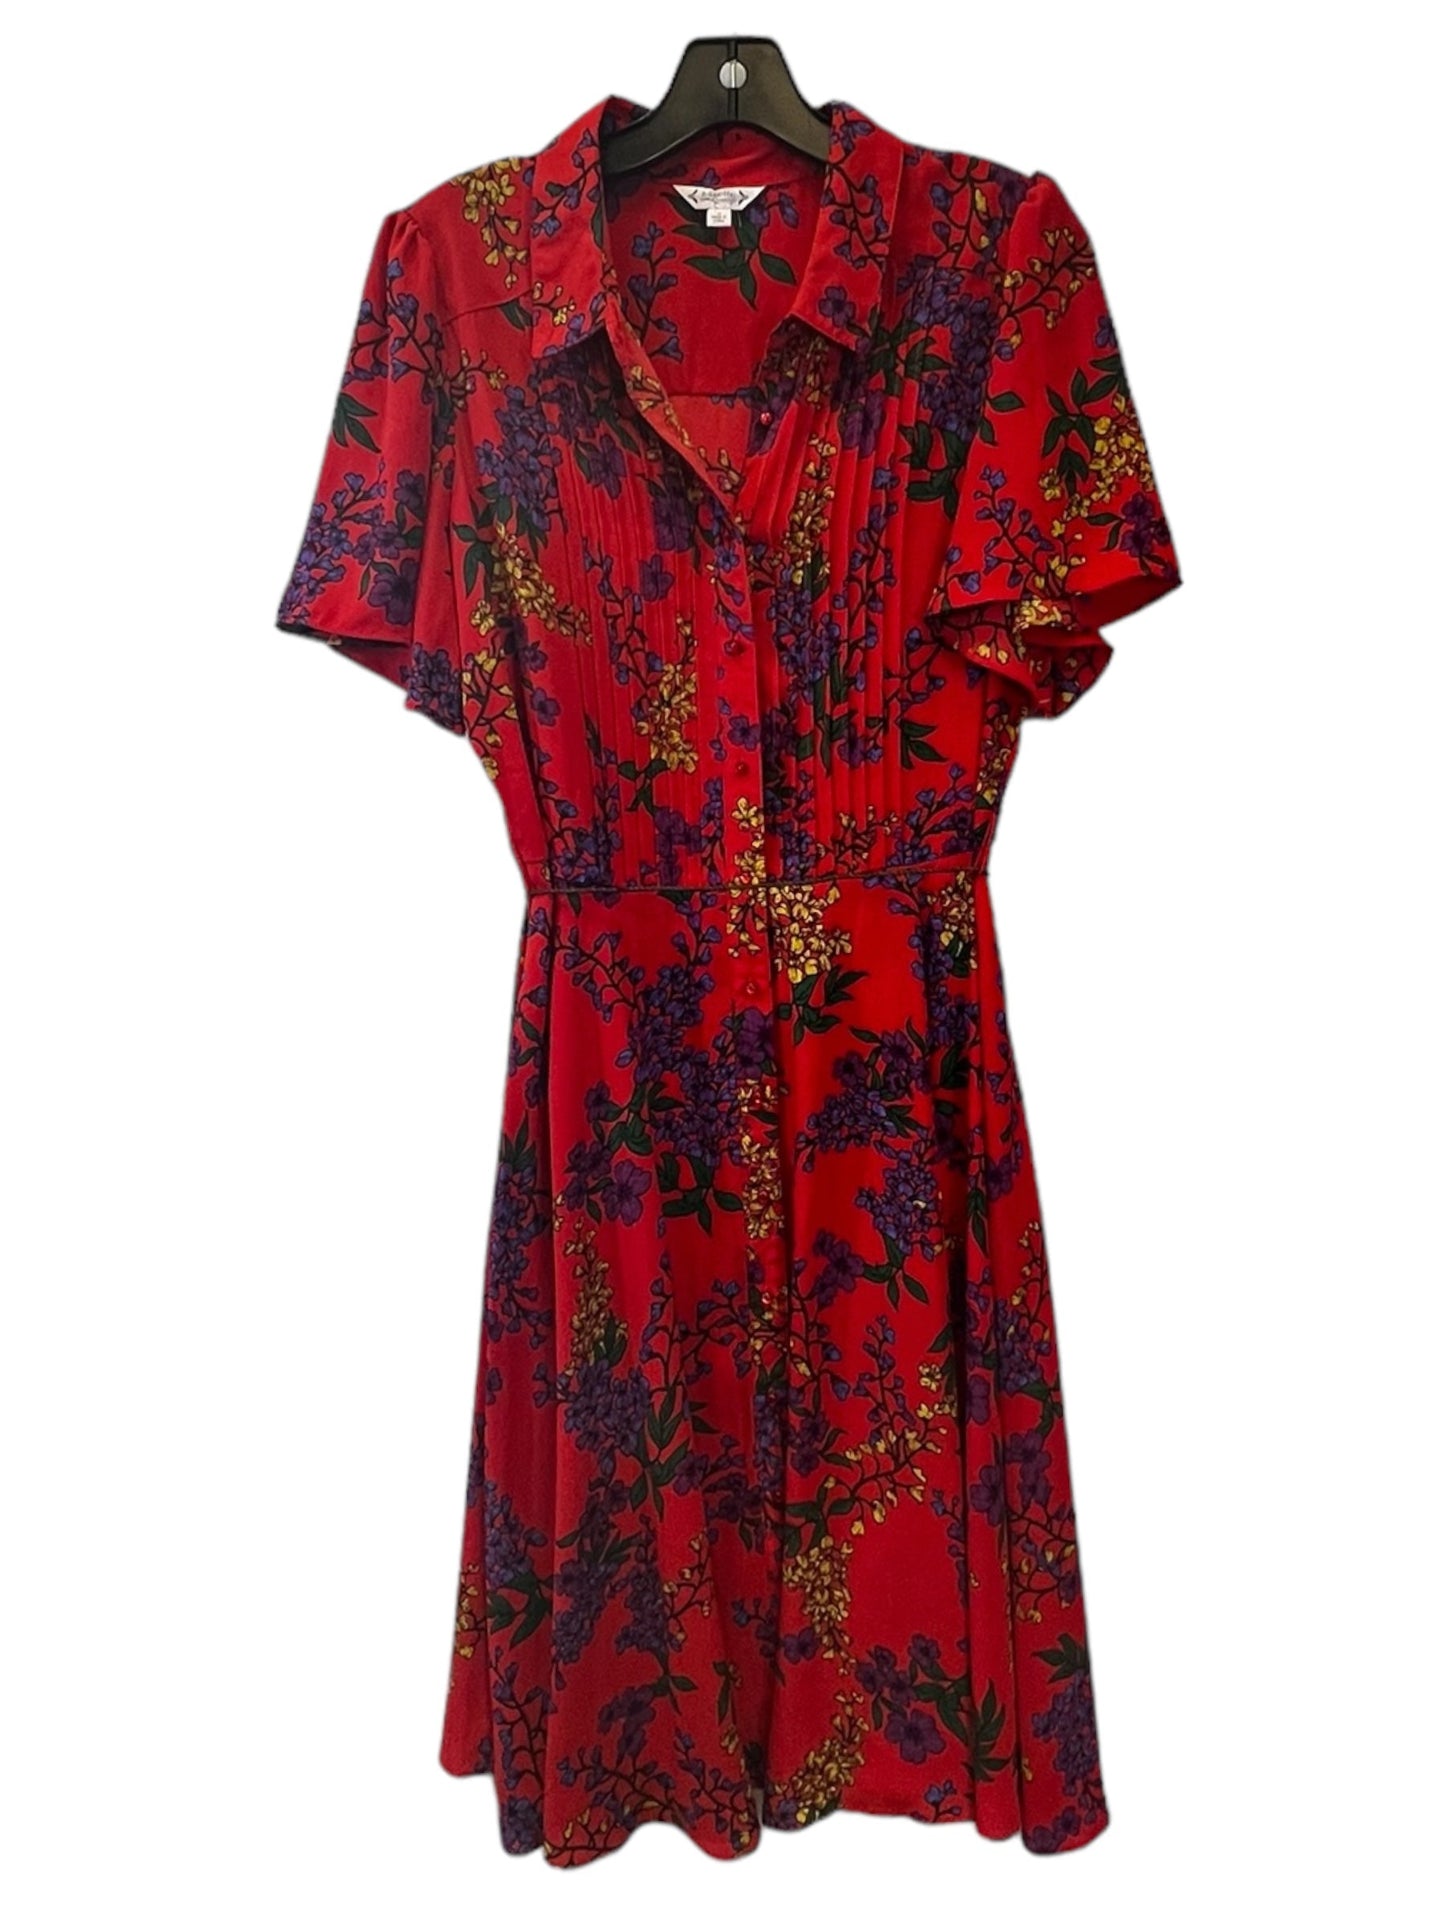 Floral Print Dress Designer Nanette Lepore, Size 10